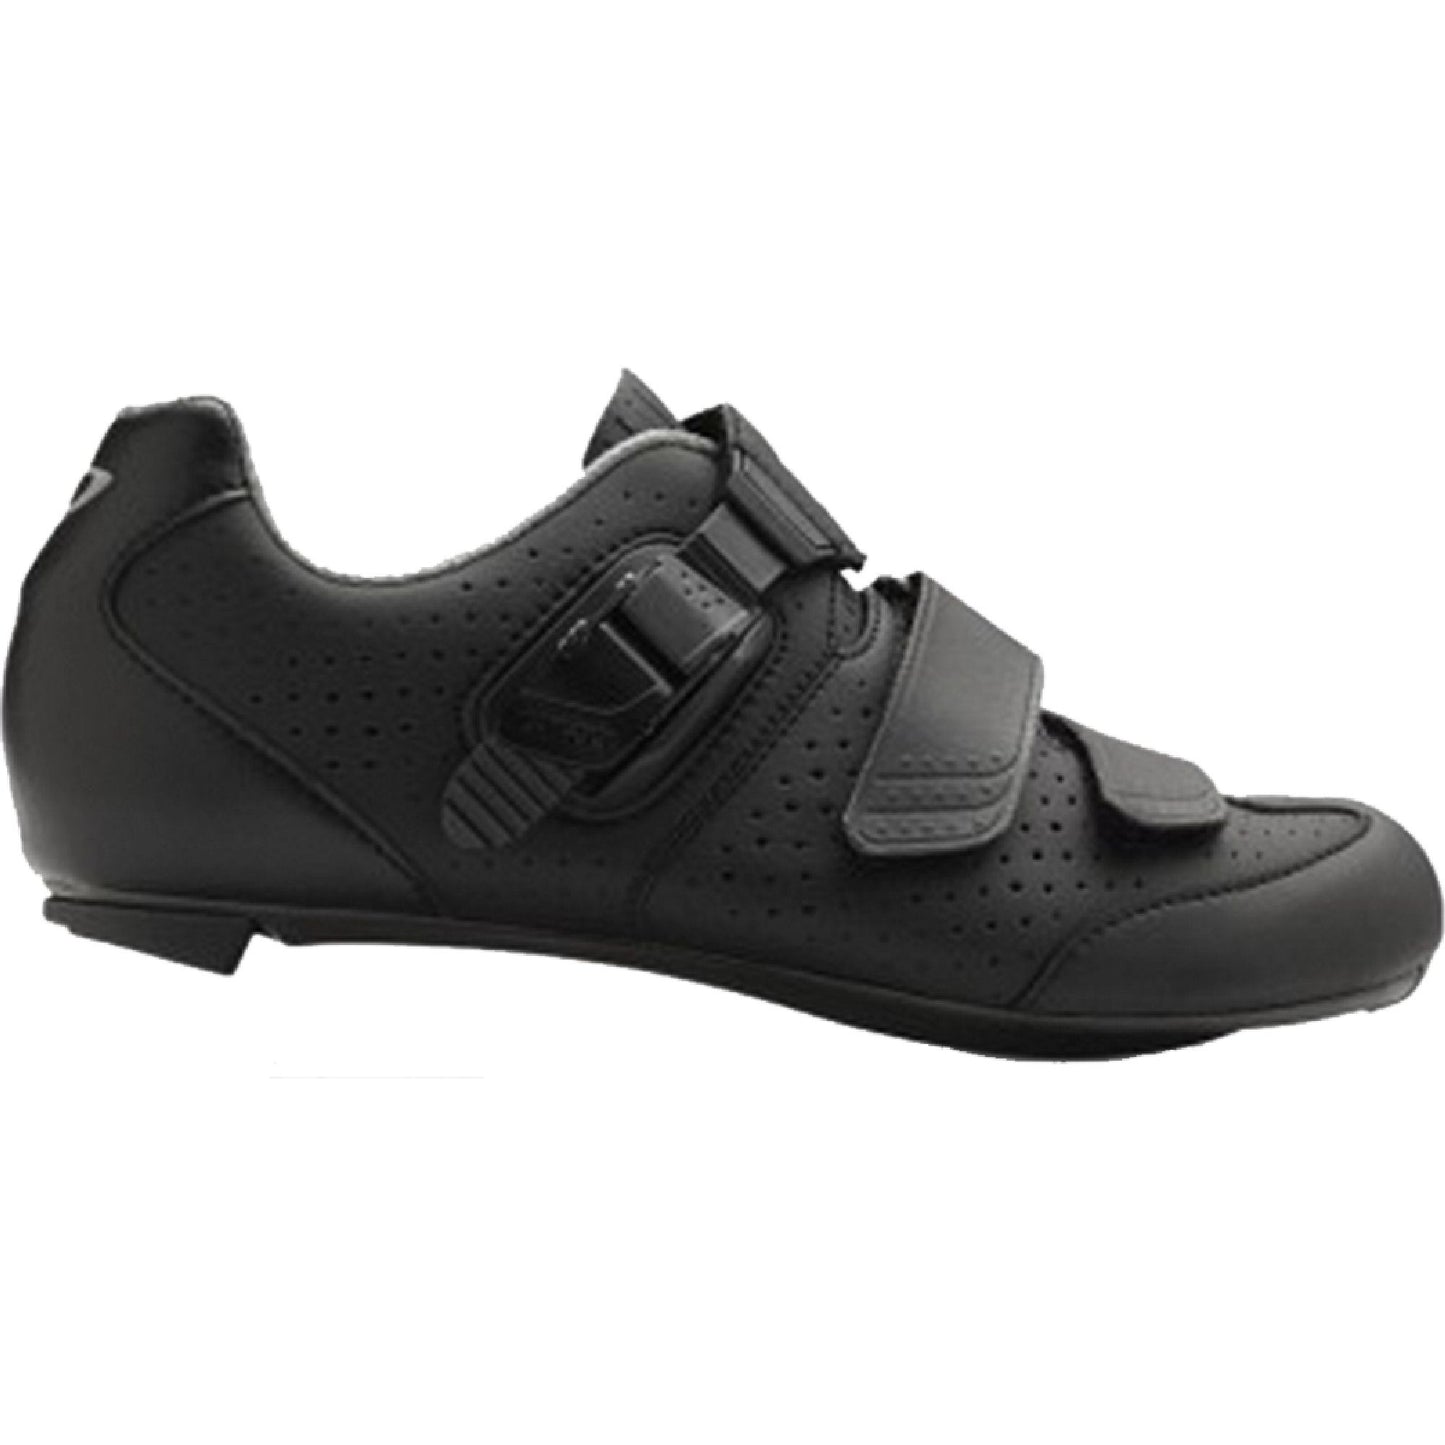 Giro ESPADA E70 Shoe - Openbox Matte Black Bike Shoes